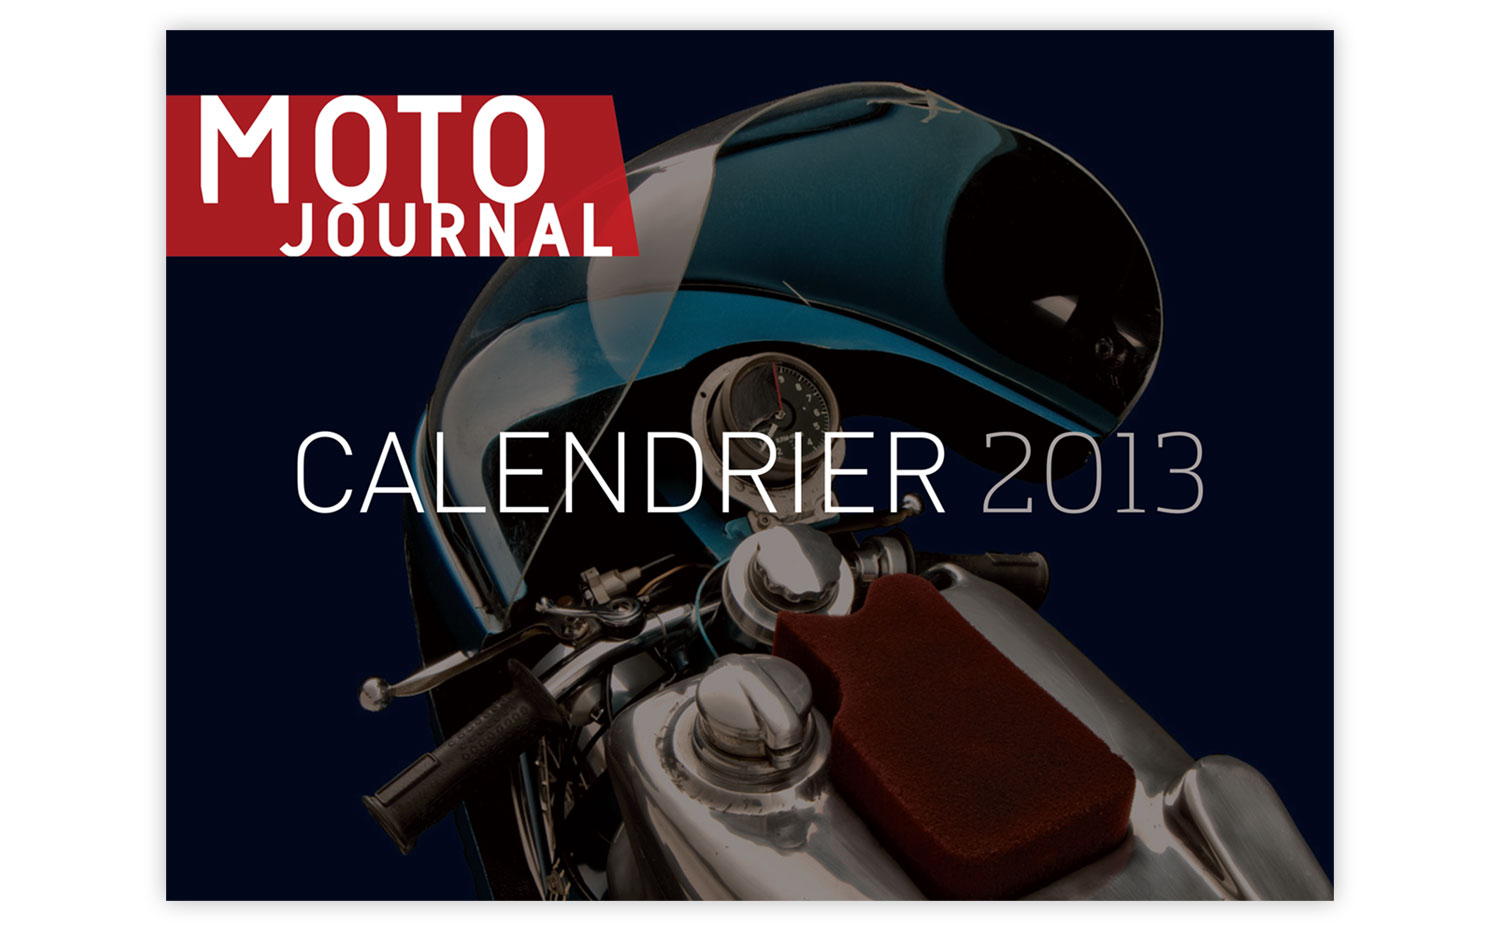 Moto Journal 2013 calendar